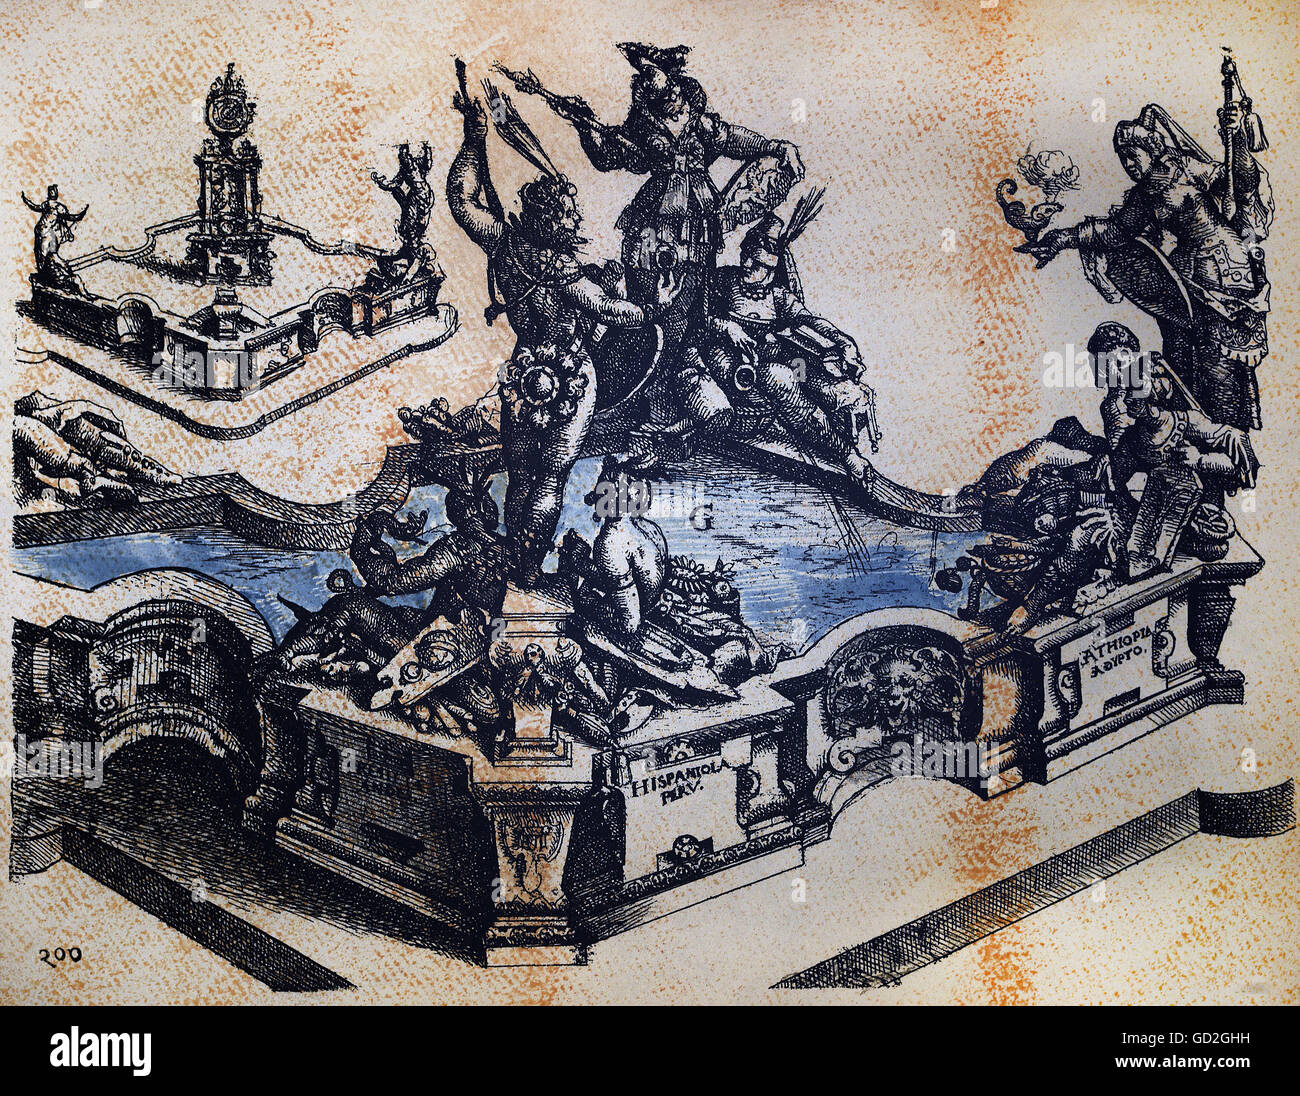 Belle arti, Dietterlin Wendel (1550 / 1551 - 1599), attacco chimico, un concetto per un fontana dei continenti, da: 'Architectura', Norimberga, 1598, collezione privata, artista del diritto d'autore non deve essere cancellata Foto Stock